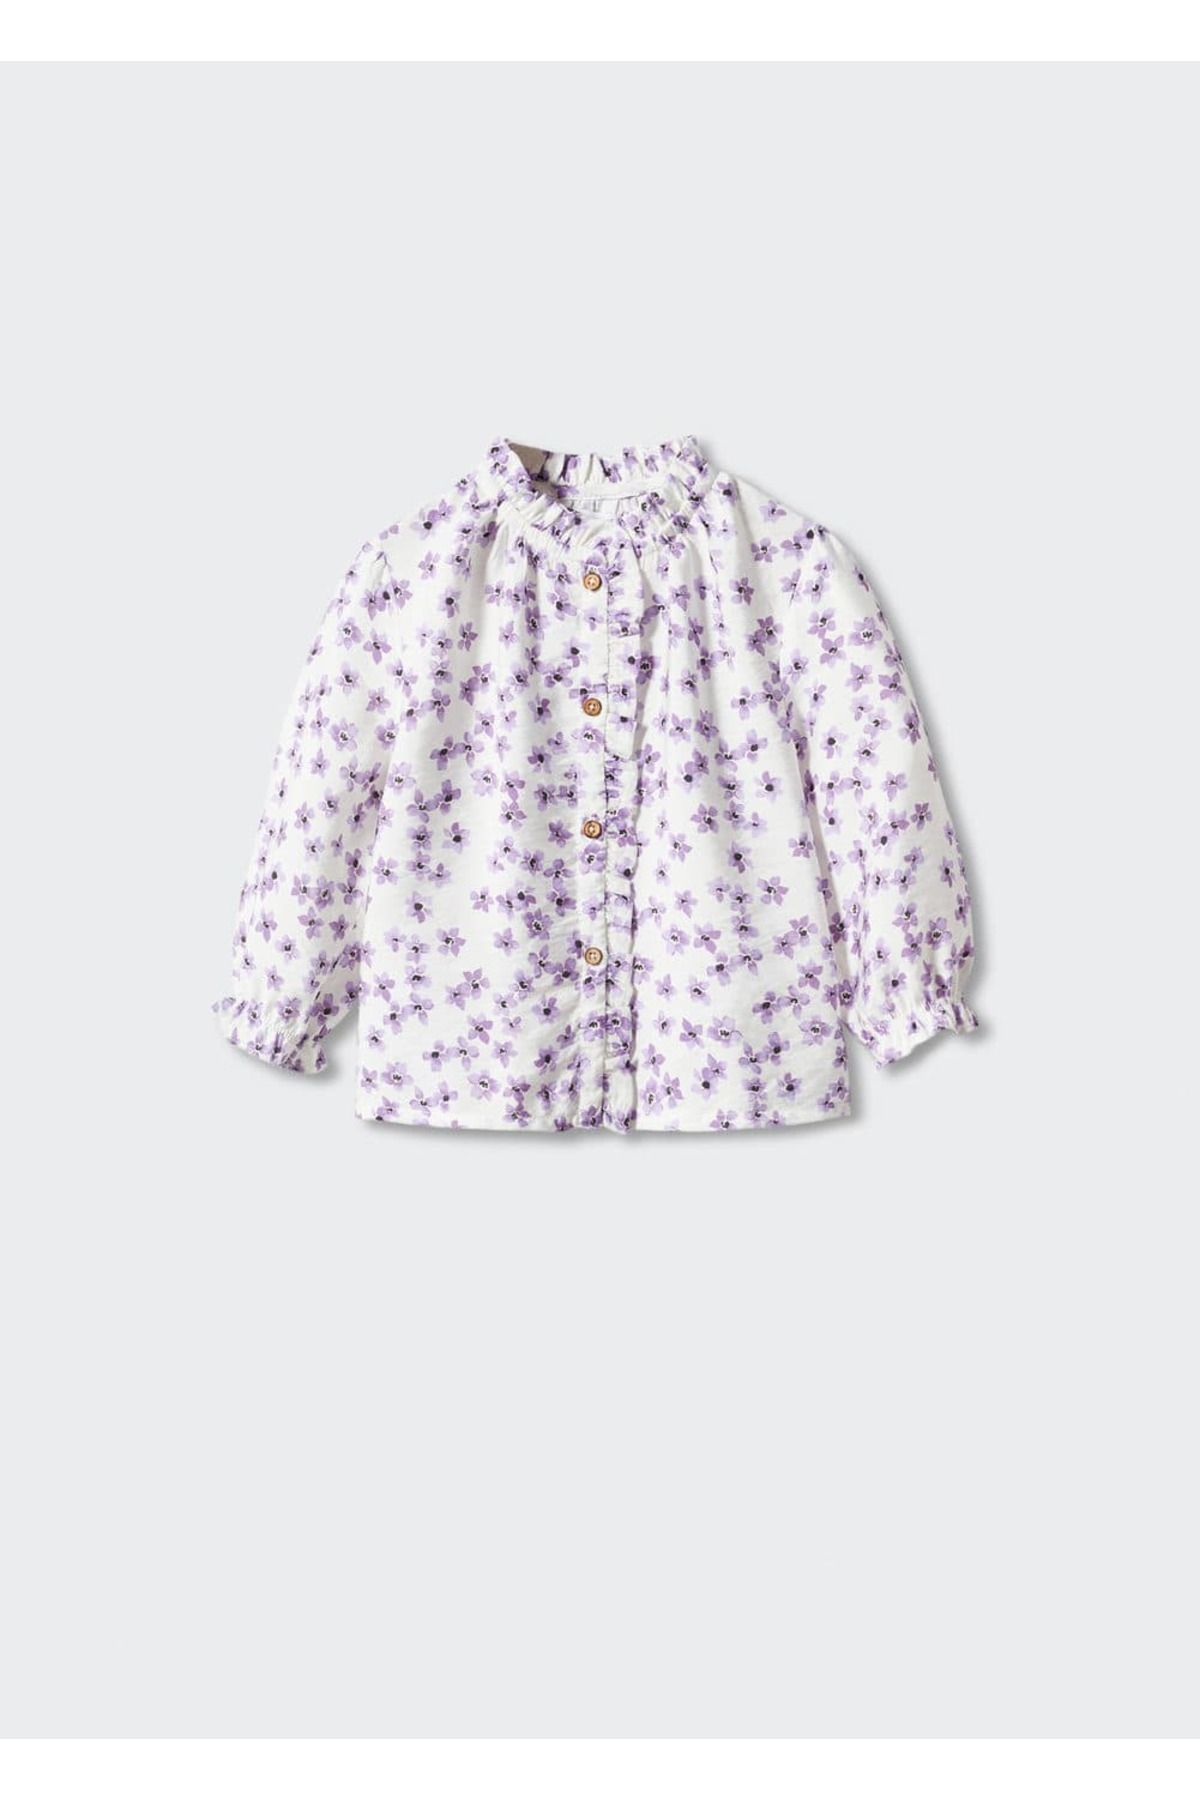 MANGO Baby Çiçek Desenli Bluz